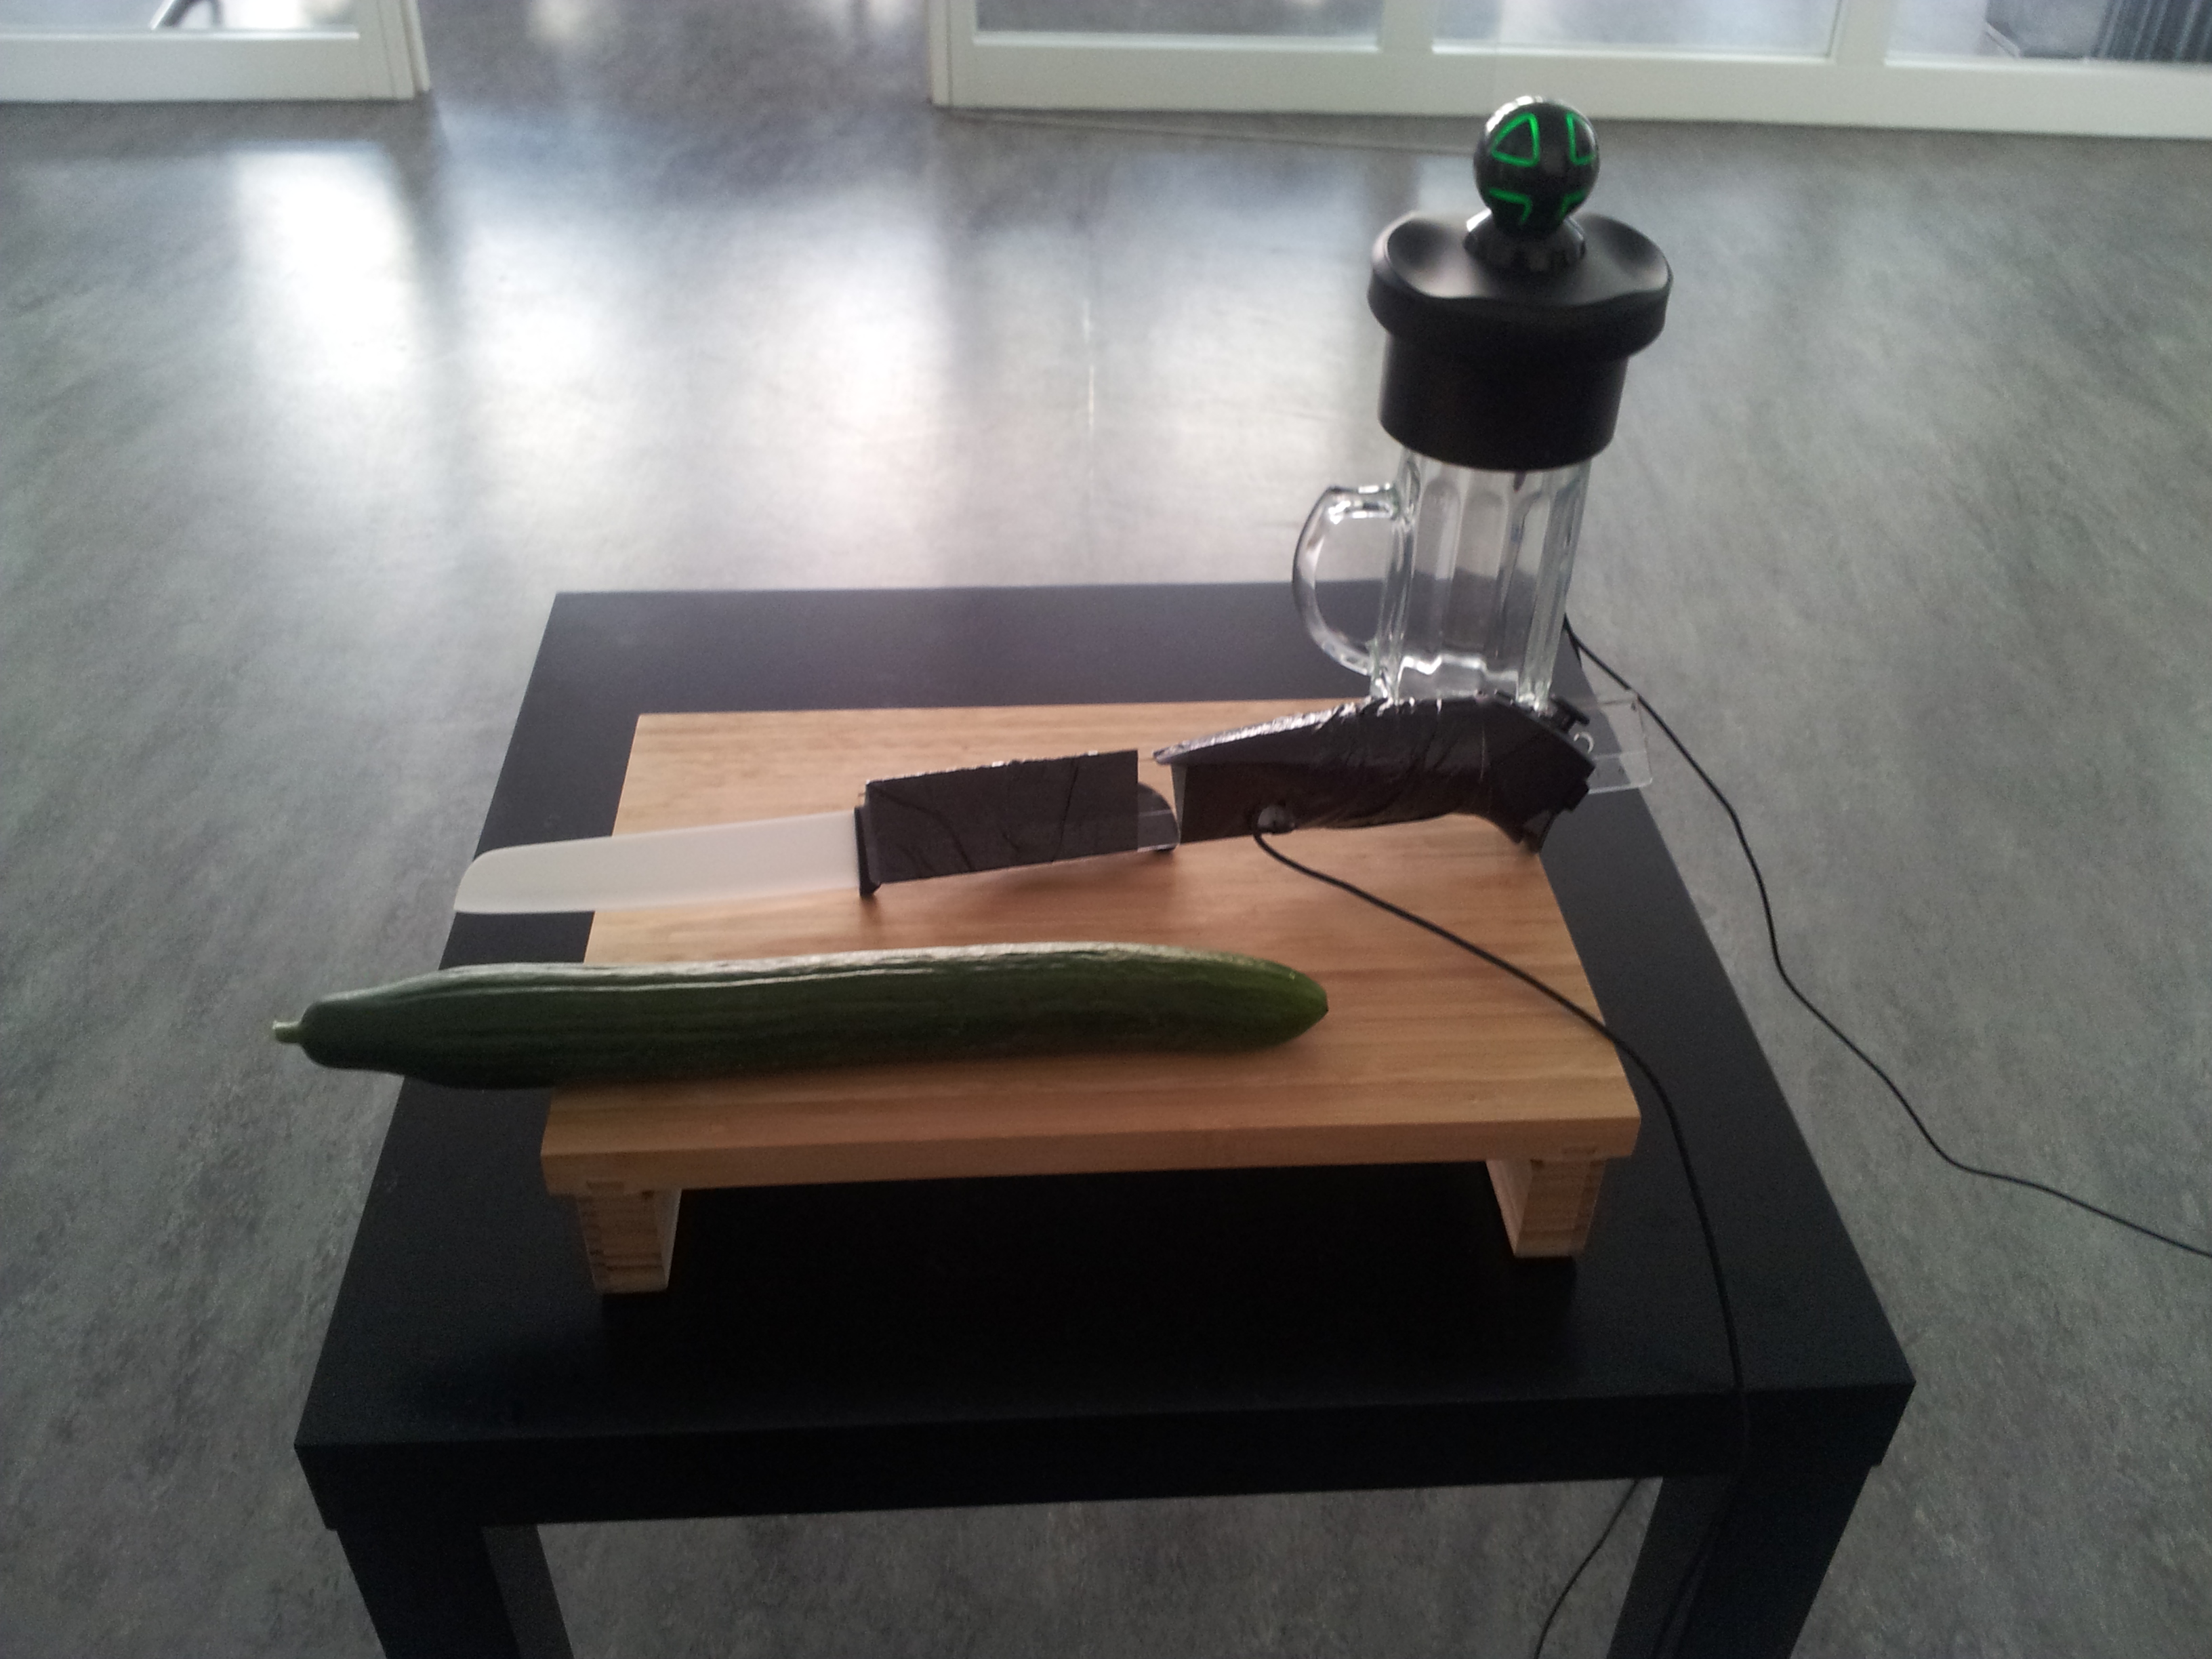 cucumber cutting setup